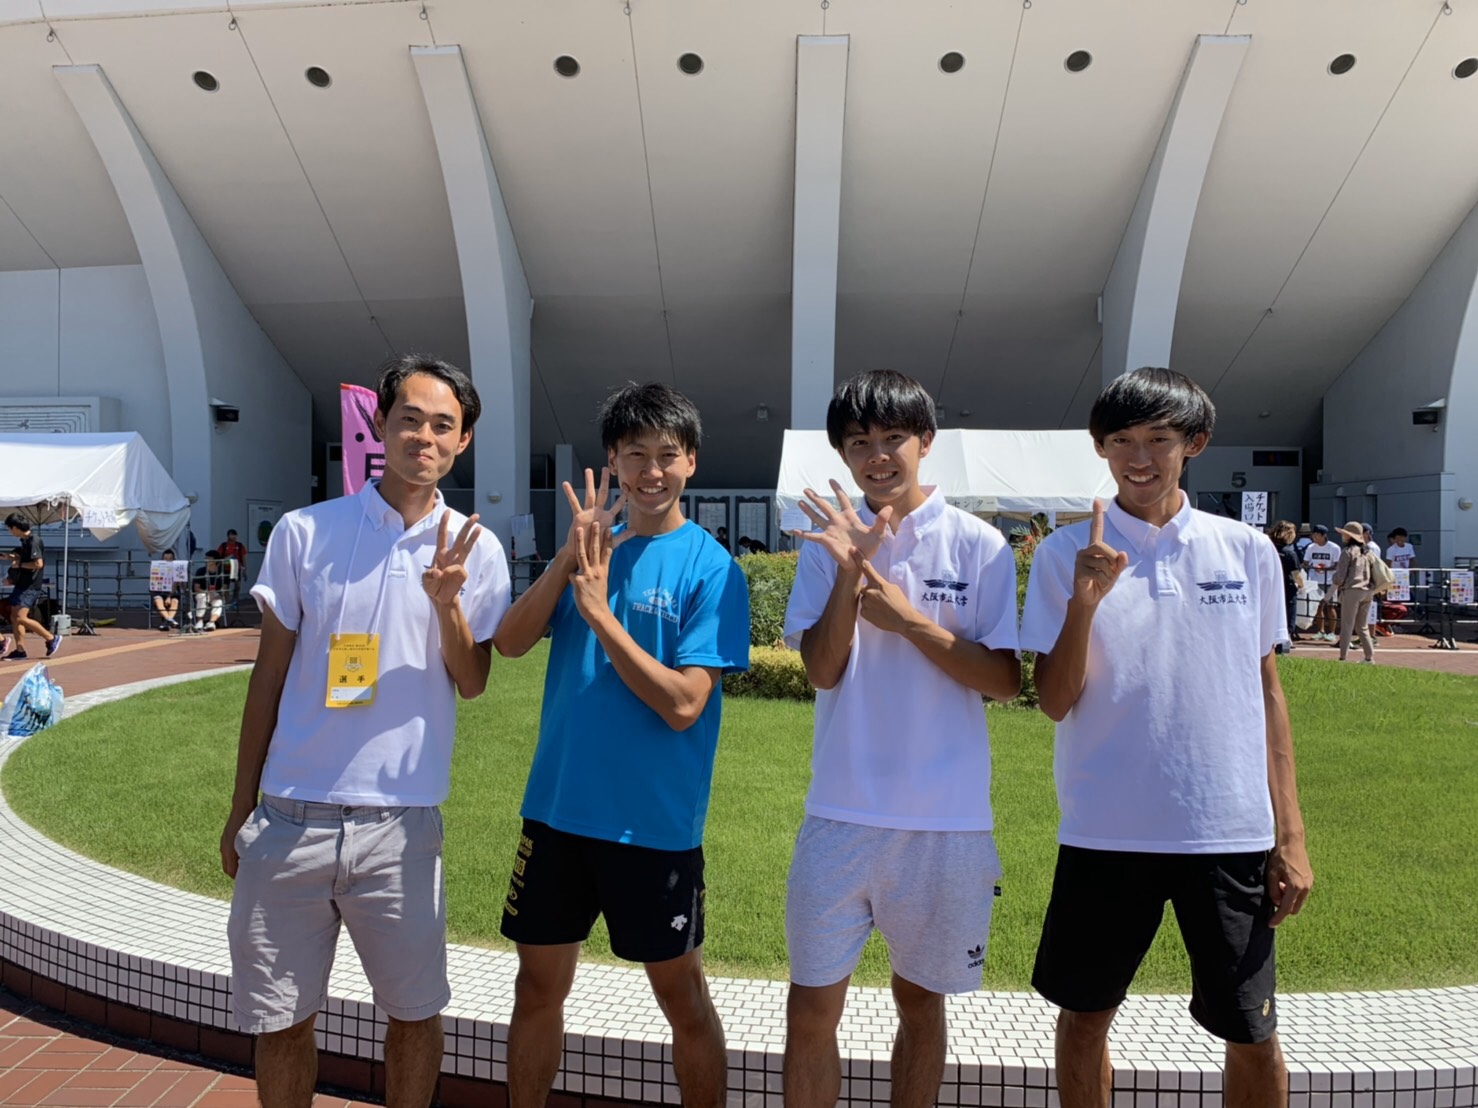 【公立大学No.1チームを目指して】大阪新記録を打ち出した大阪市立大学の4人